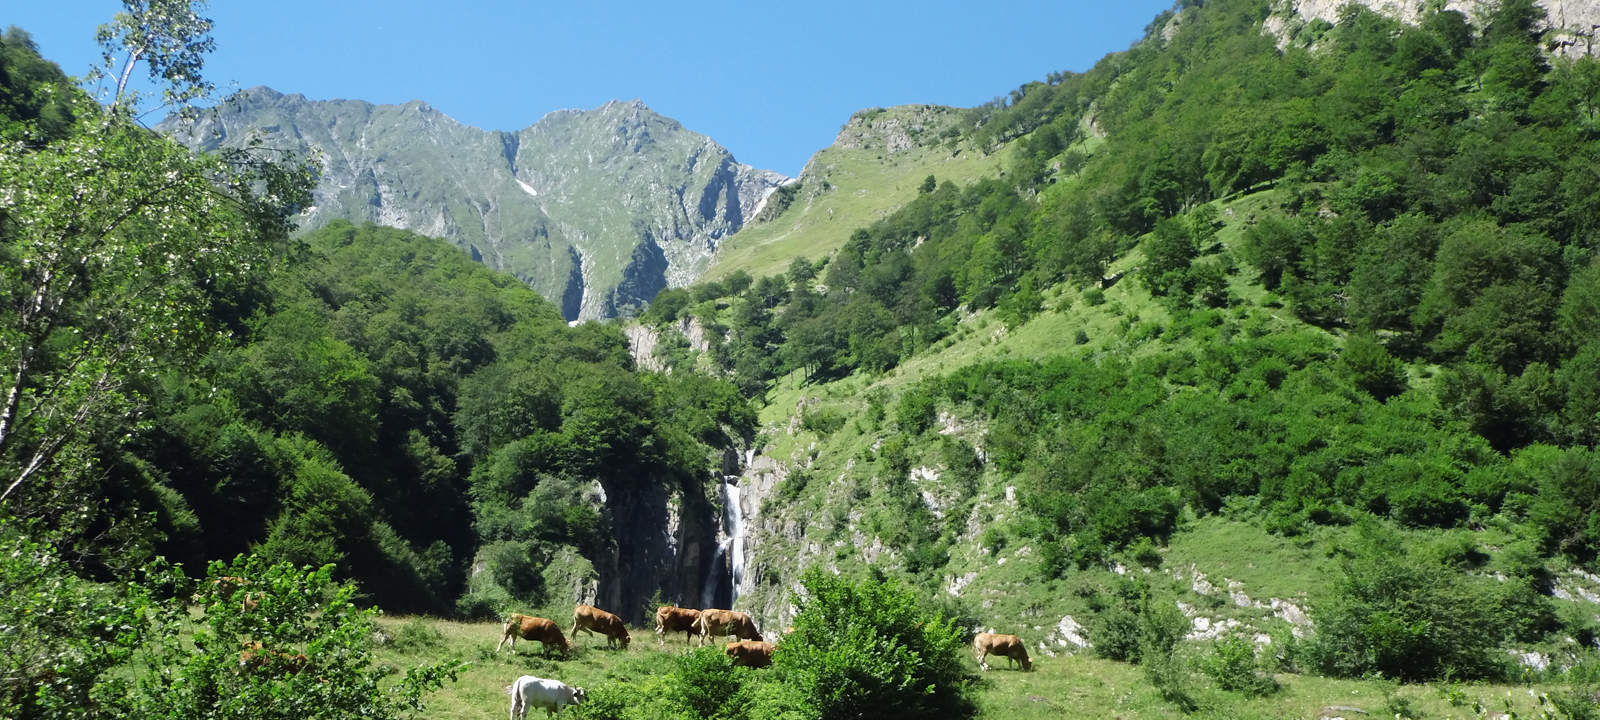 Gite Enso de Jules à Aleu, Ariège Pyrénées